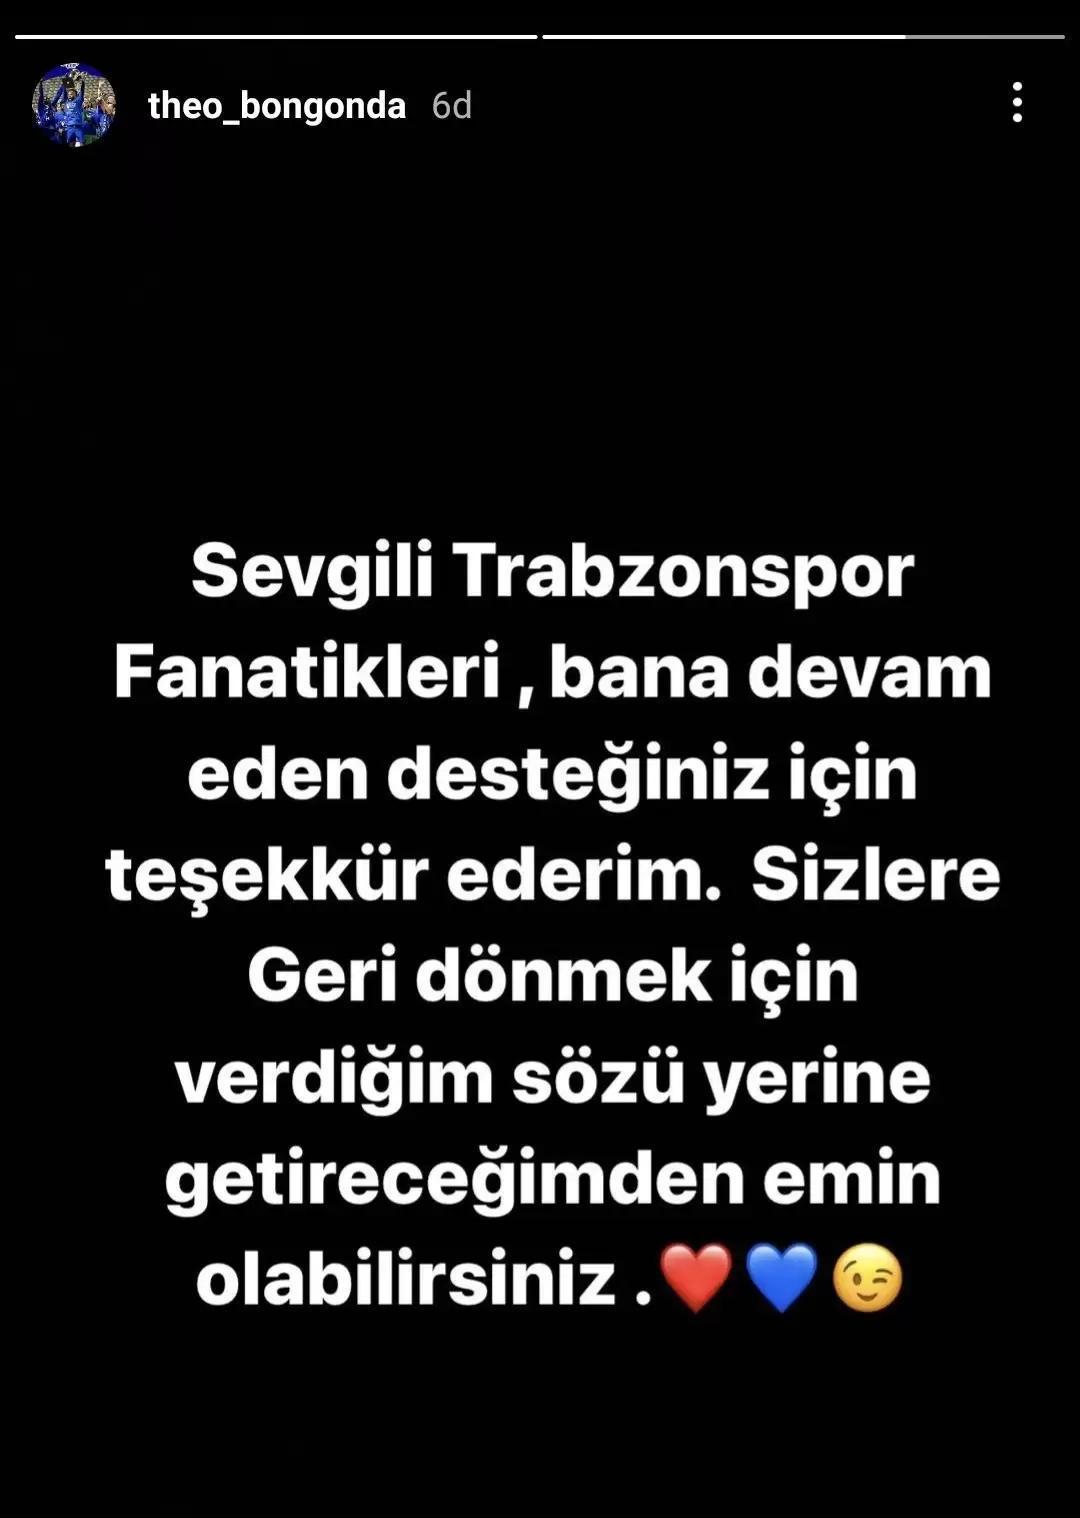 Trabzonspordan Bongonda bombası